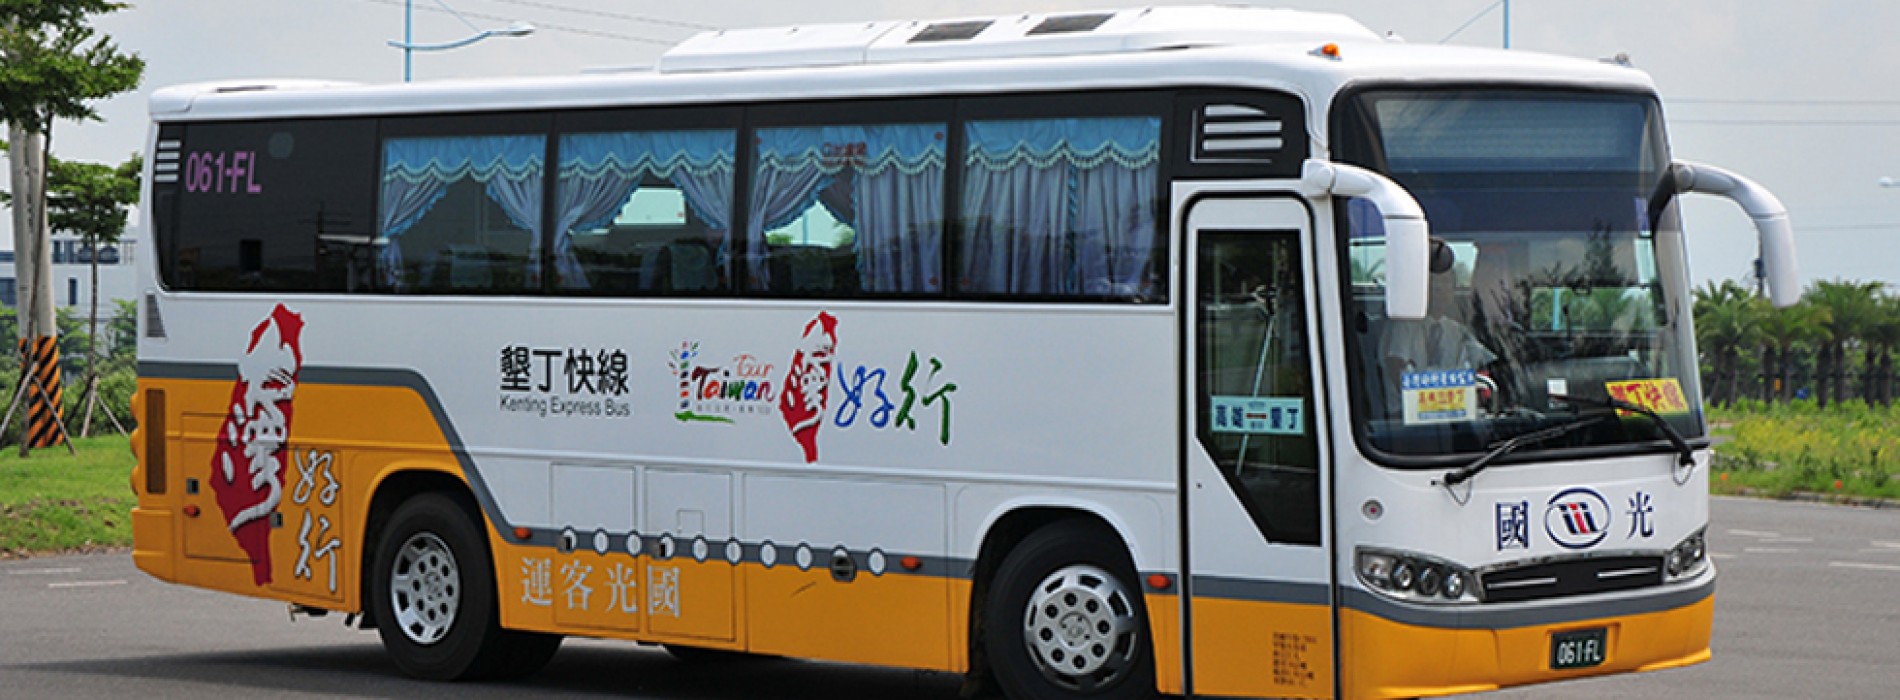 Ride the Taiwan Tourist Shuttle Service!